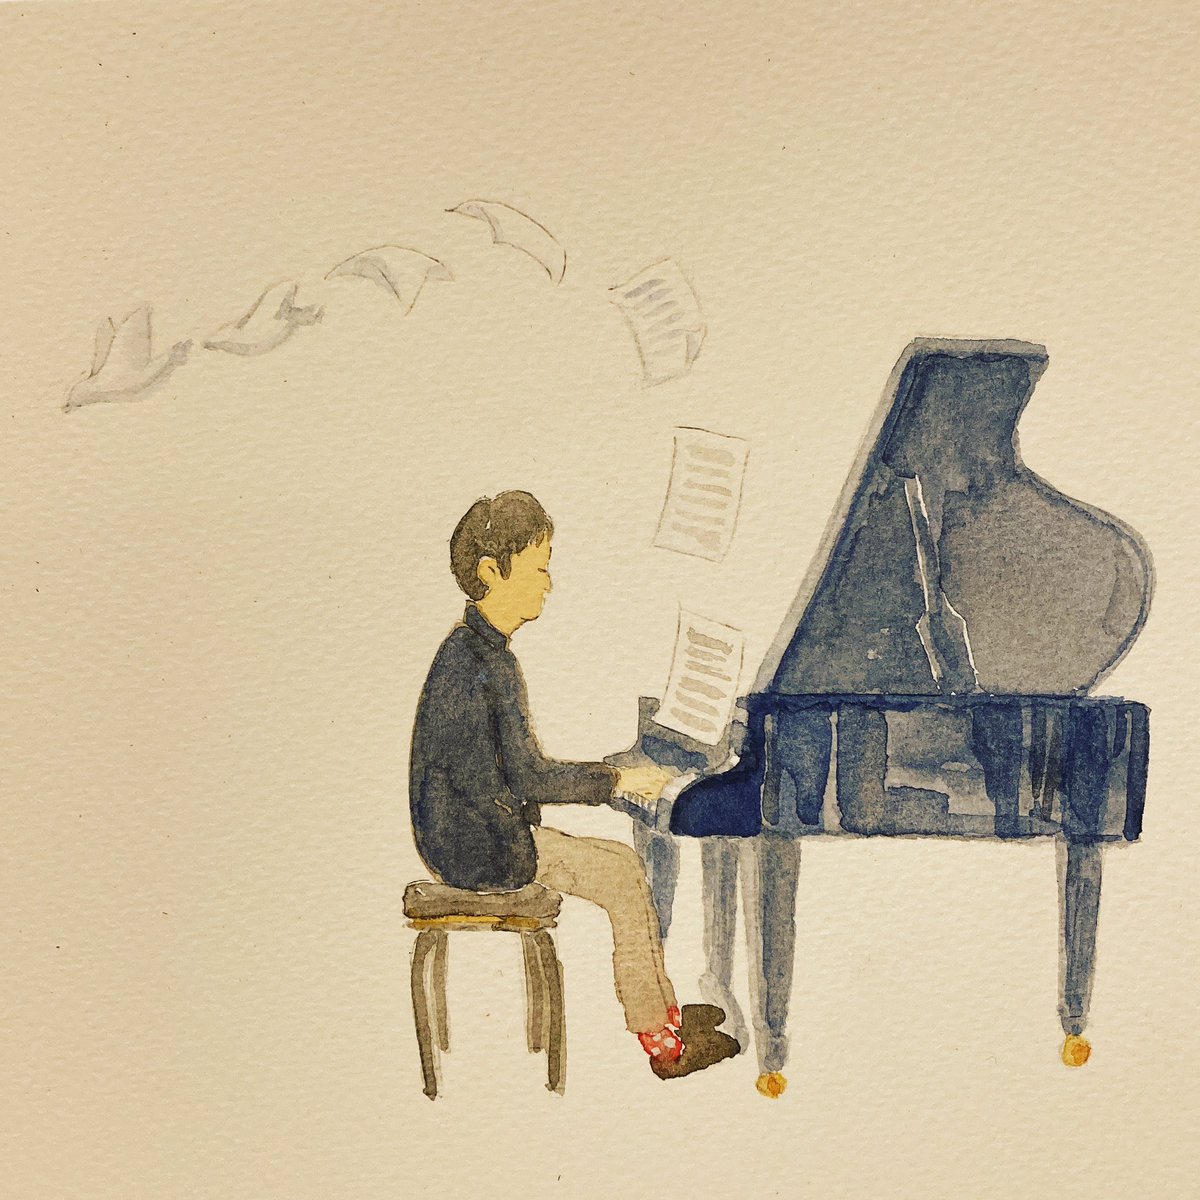 おはようございます☀柳原陽一郎さんのアルバムGood Days のパンフレットを参考に描いてみました。良い一日を！#gooddays #illustraion #manplayingpiano #watercolor #イラスト #水彩イラスト #アナログイラスト #ピアノ #ピアノを弾く人 #音楽